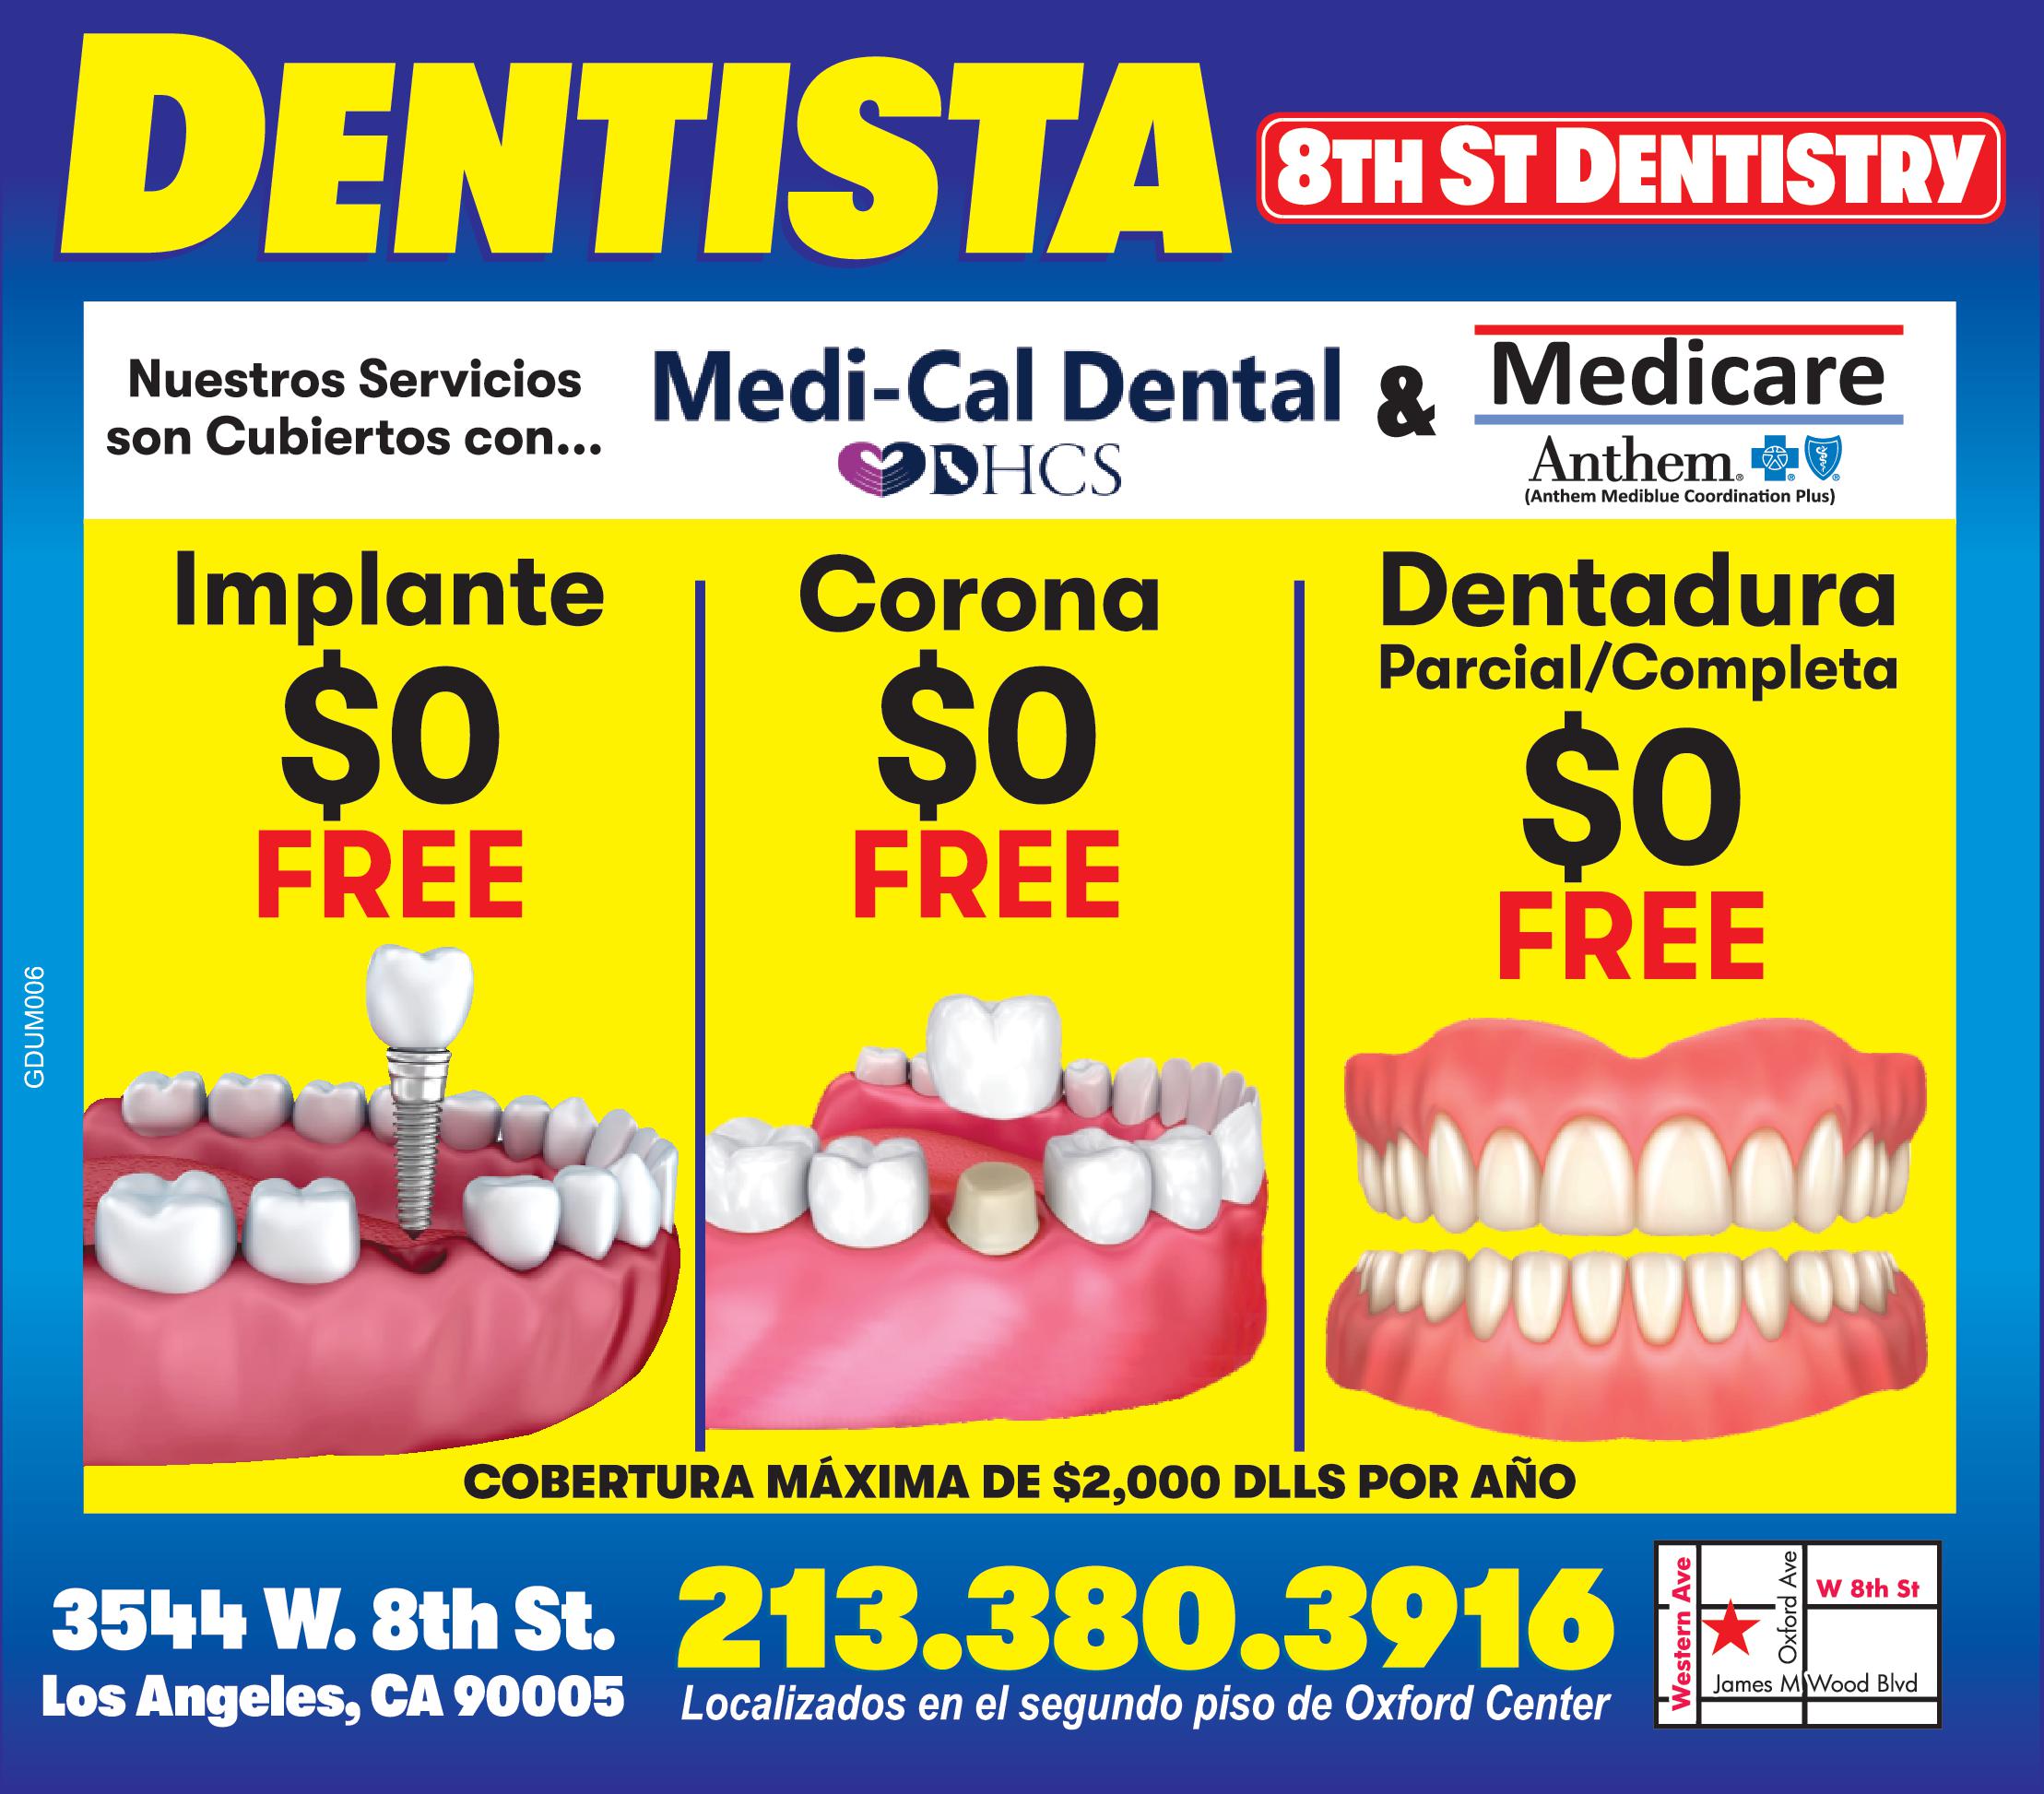 DENTISTA 8TH ST DENTISTRY
Nuestros Servicios son cubiertos con... Medi-Cal Dental & Medicare
Implante $0 FREE
 Corona  $0 FREE
Dentadura Parcial/ Completa $0 FREE
COBERTURA MAXIMA DE $2,000 DLLS POR AÑO
3544 W. 8TH ST LOS ANGELES CA 90005
213-380-3916 LOCALIZADOS EN EL SEGUNDO PISO